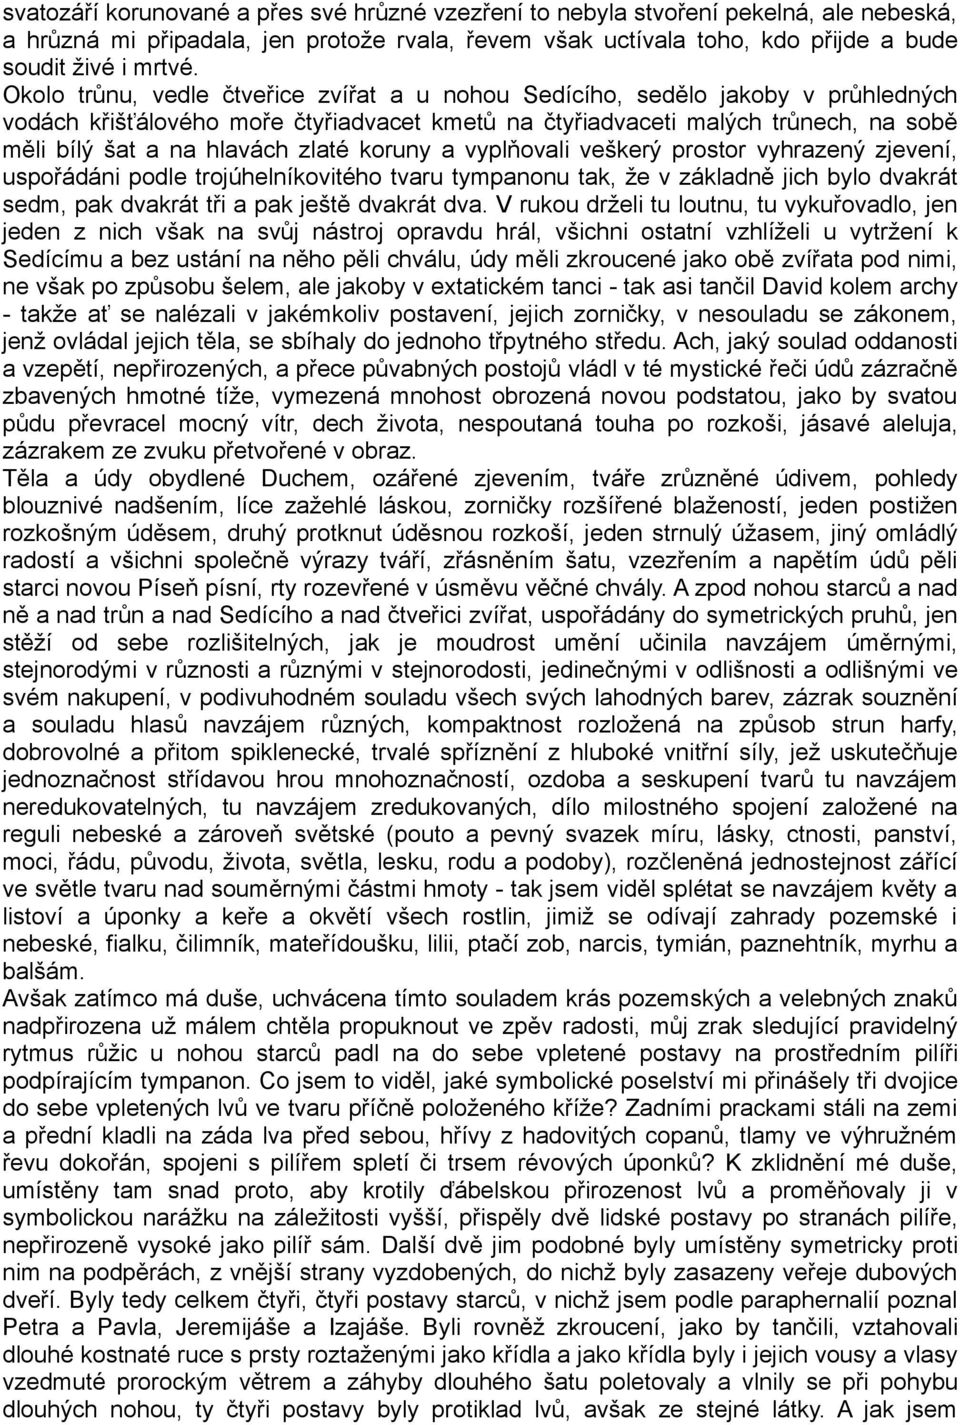 Umberto Eco JMÉNO RŮŽE - PDF Free Download